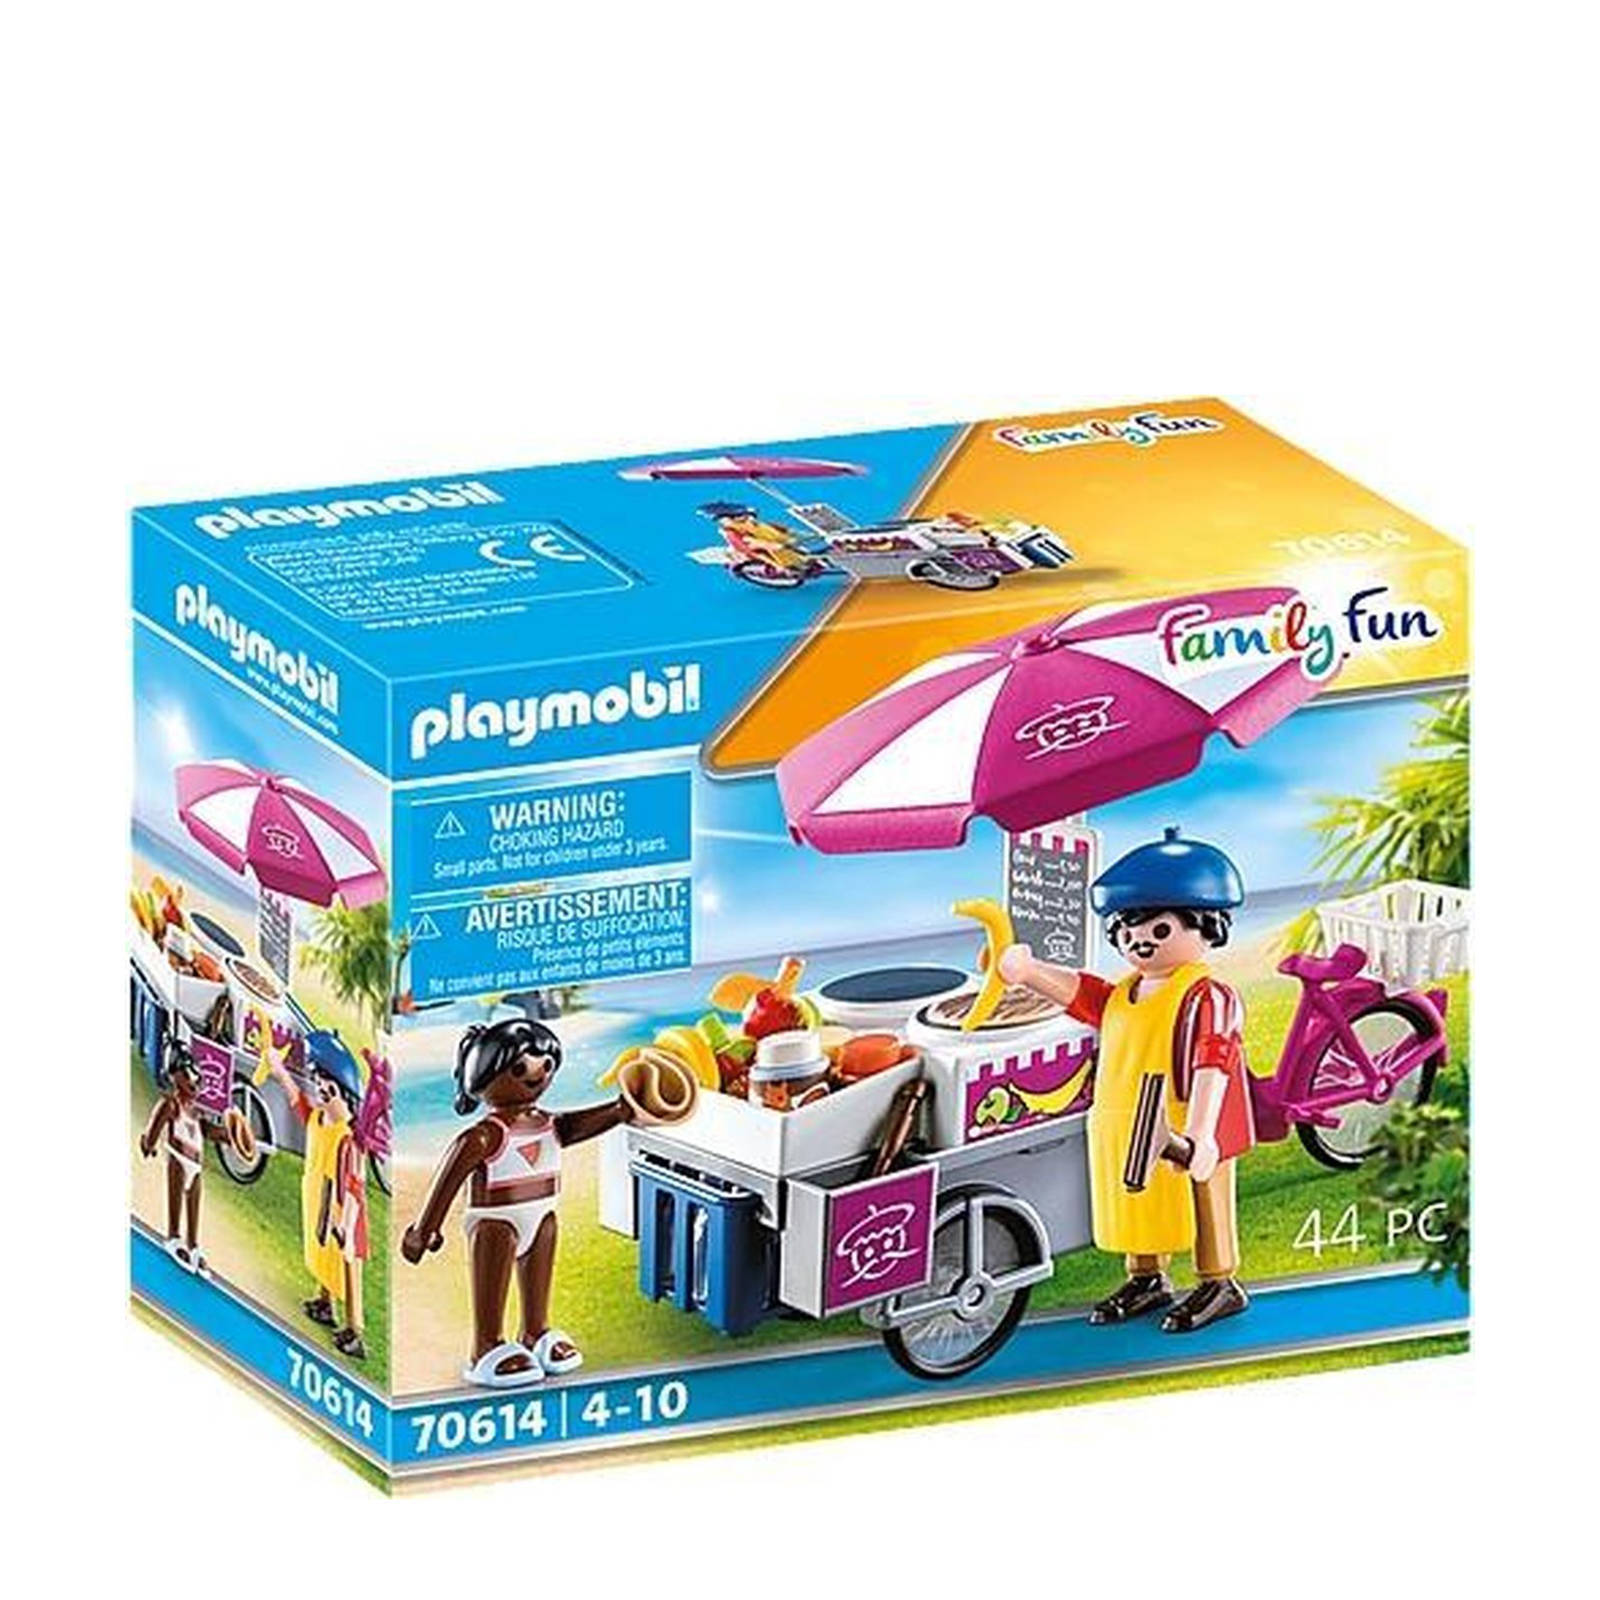 Playmobil ® Constructie speelset Mobiele crêpesverkoop(70614 ), Family fun Gemaakt in Europa(44 stuks ) online kopen